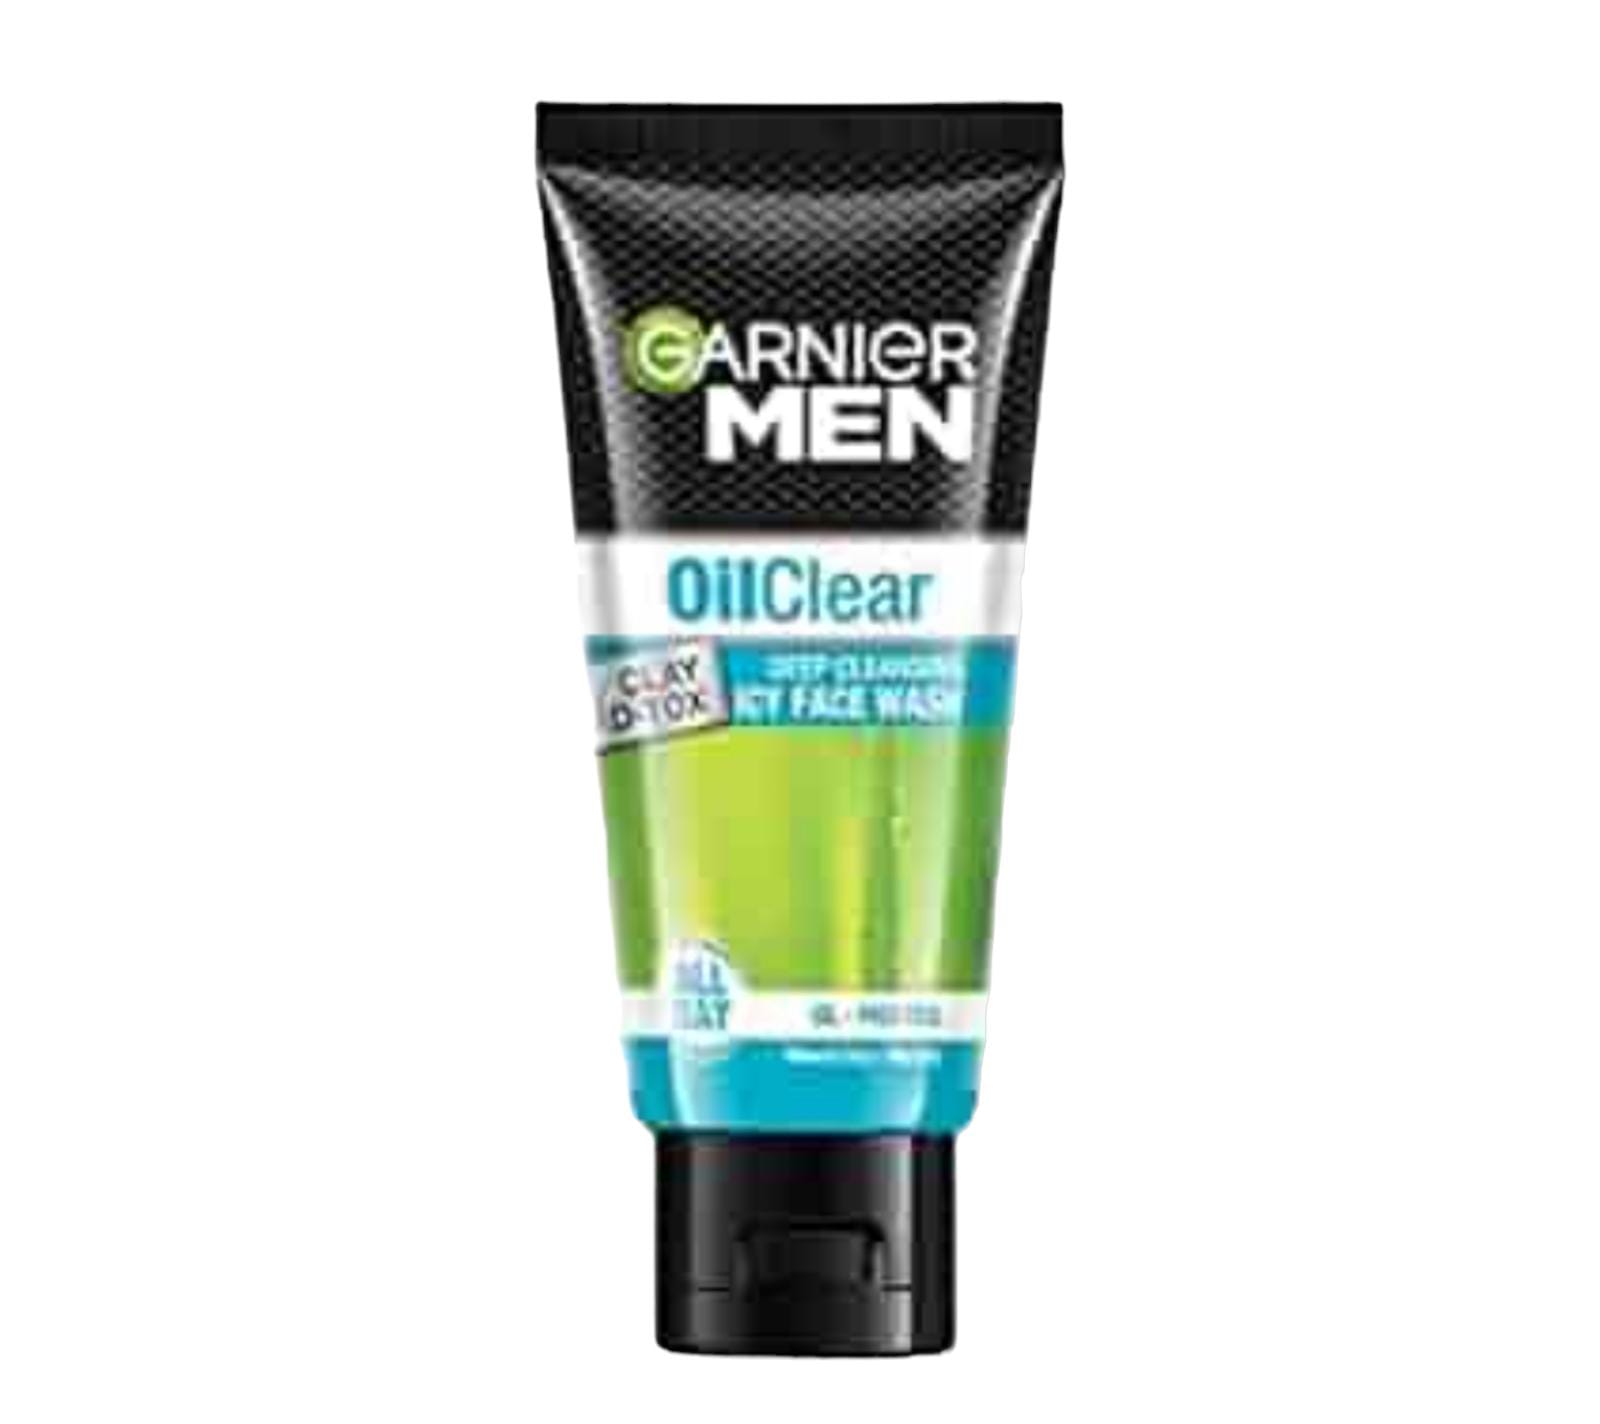 Garnier Men oil clear face wash